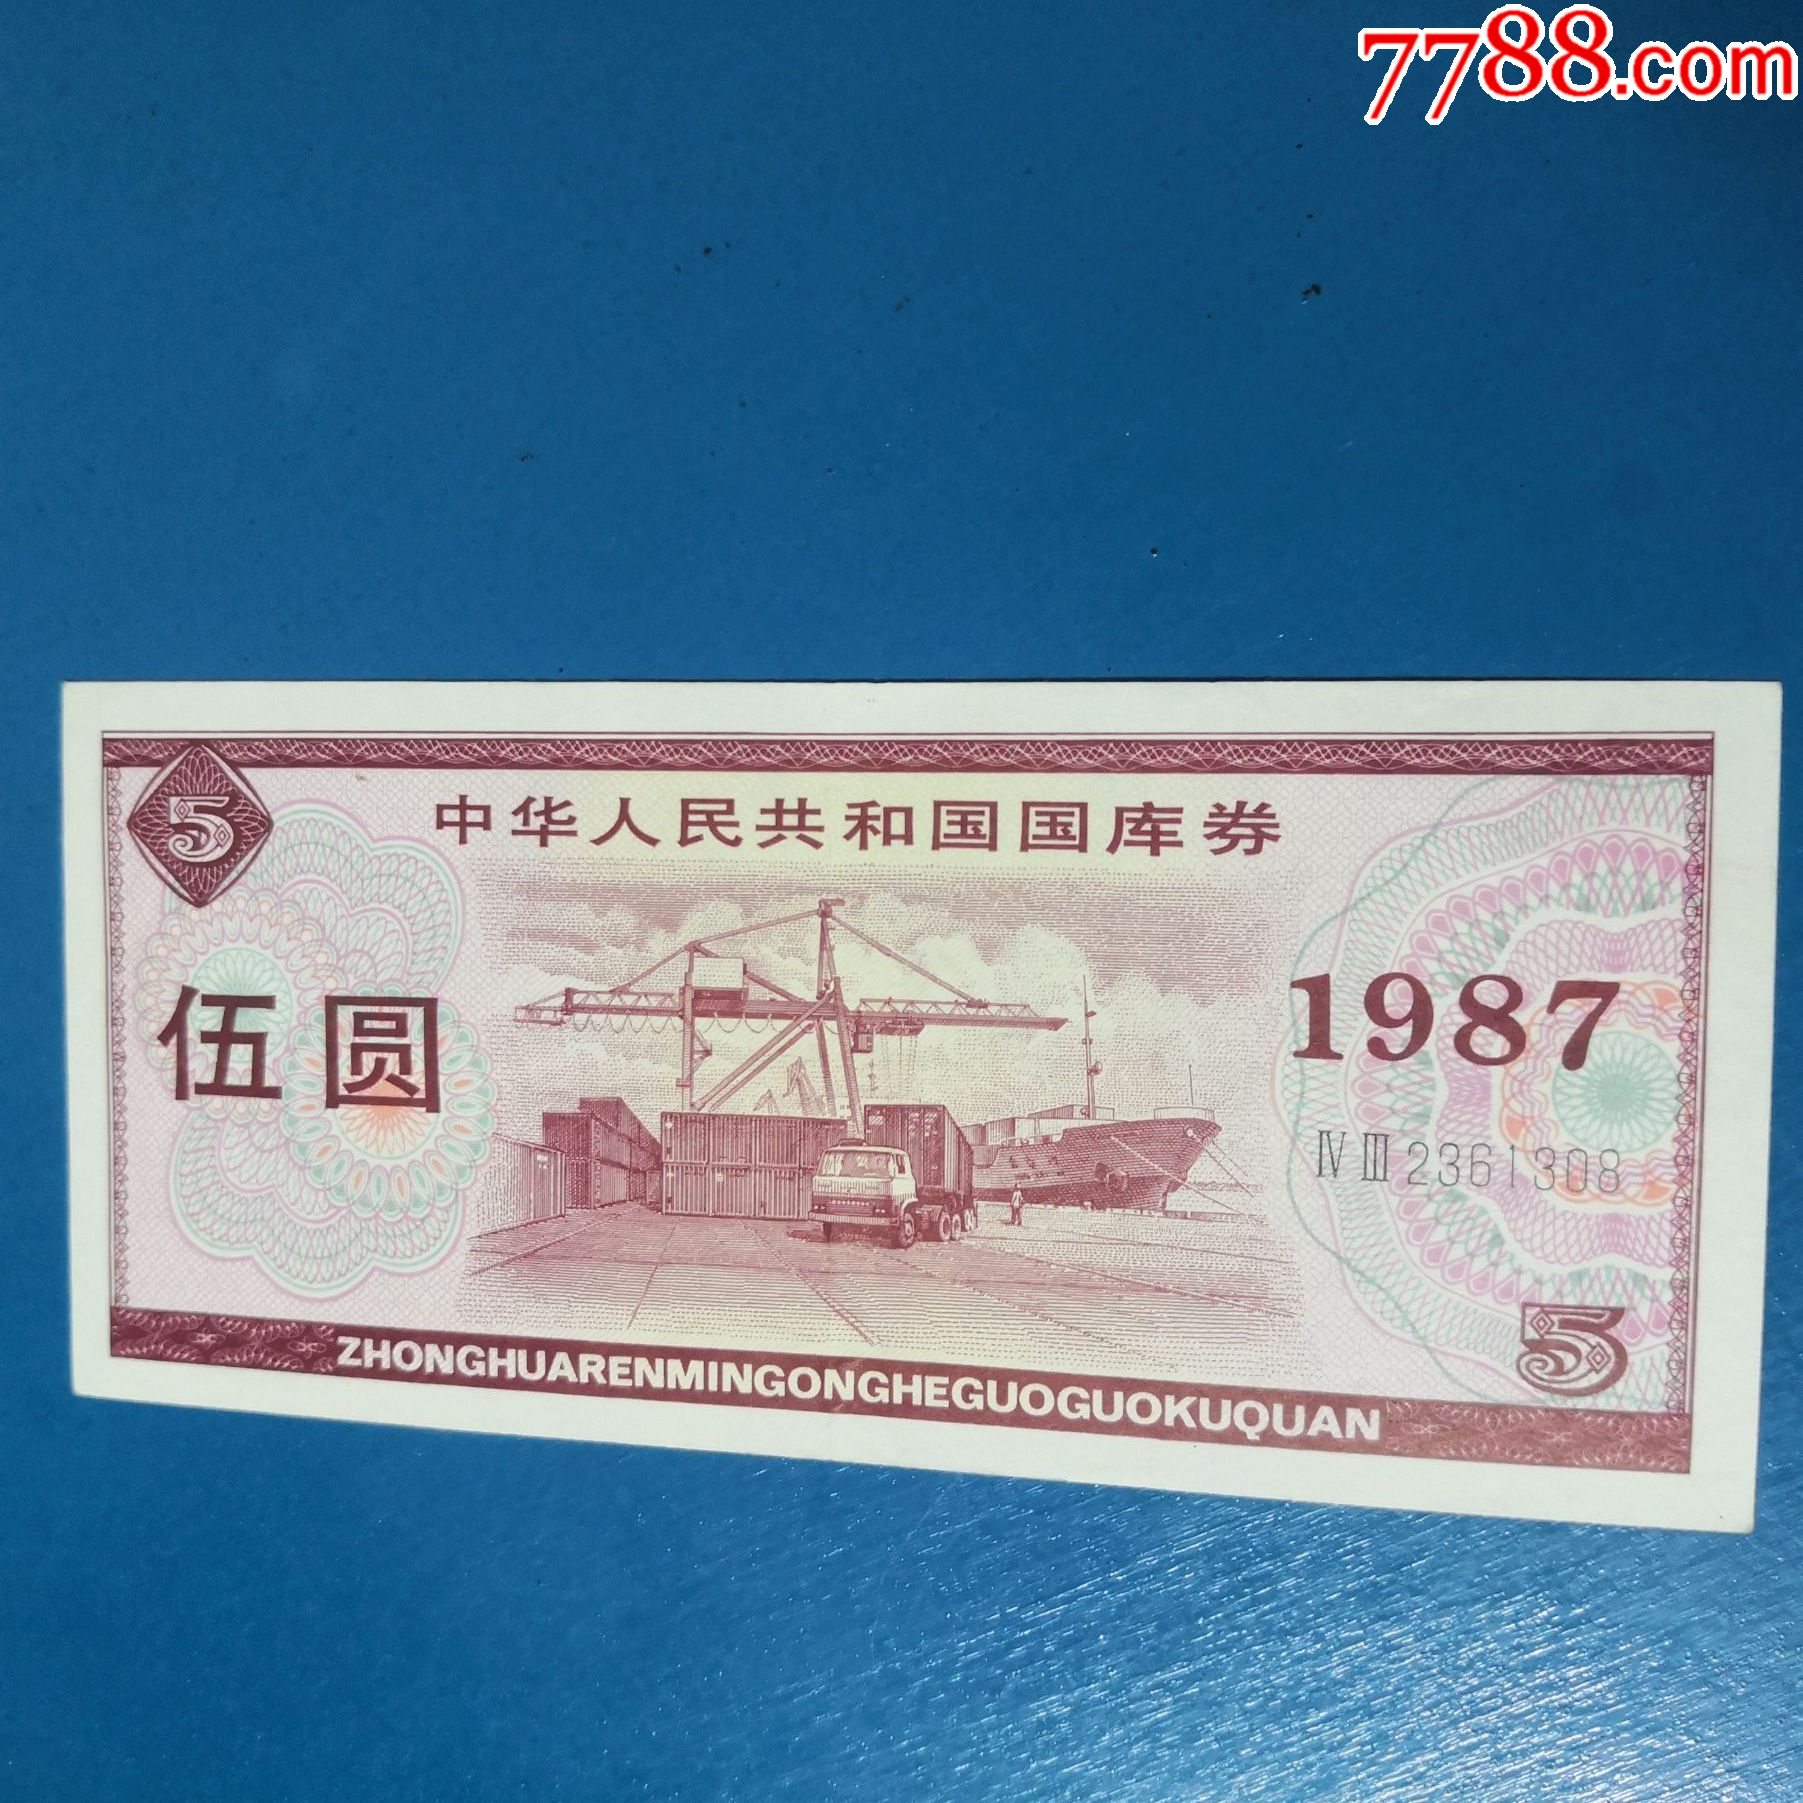 1987年5元国库券一枚